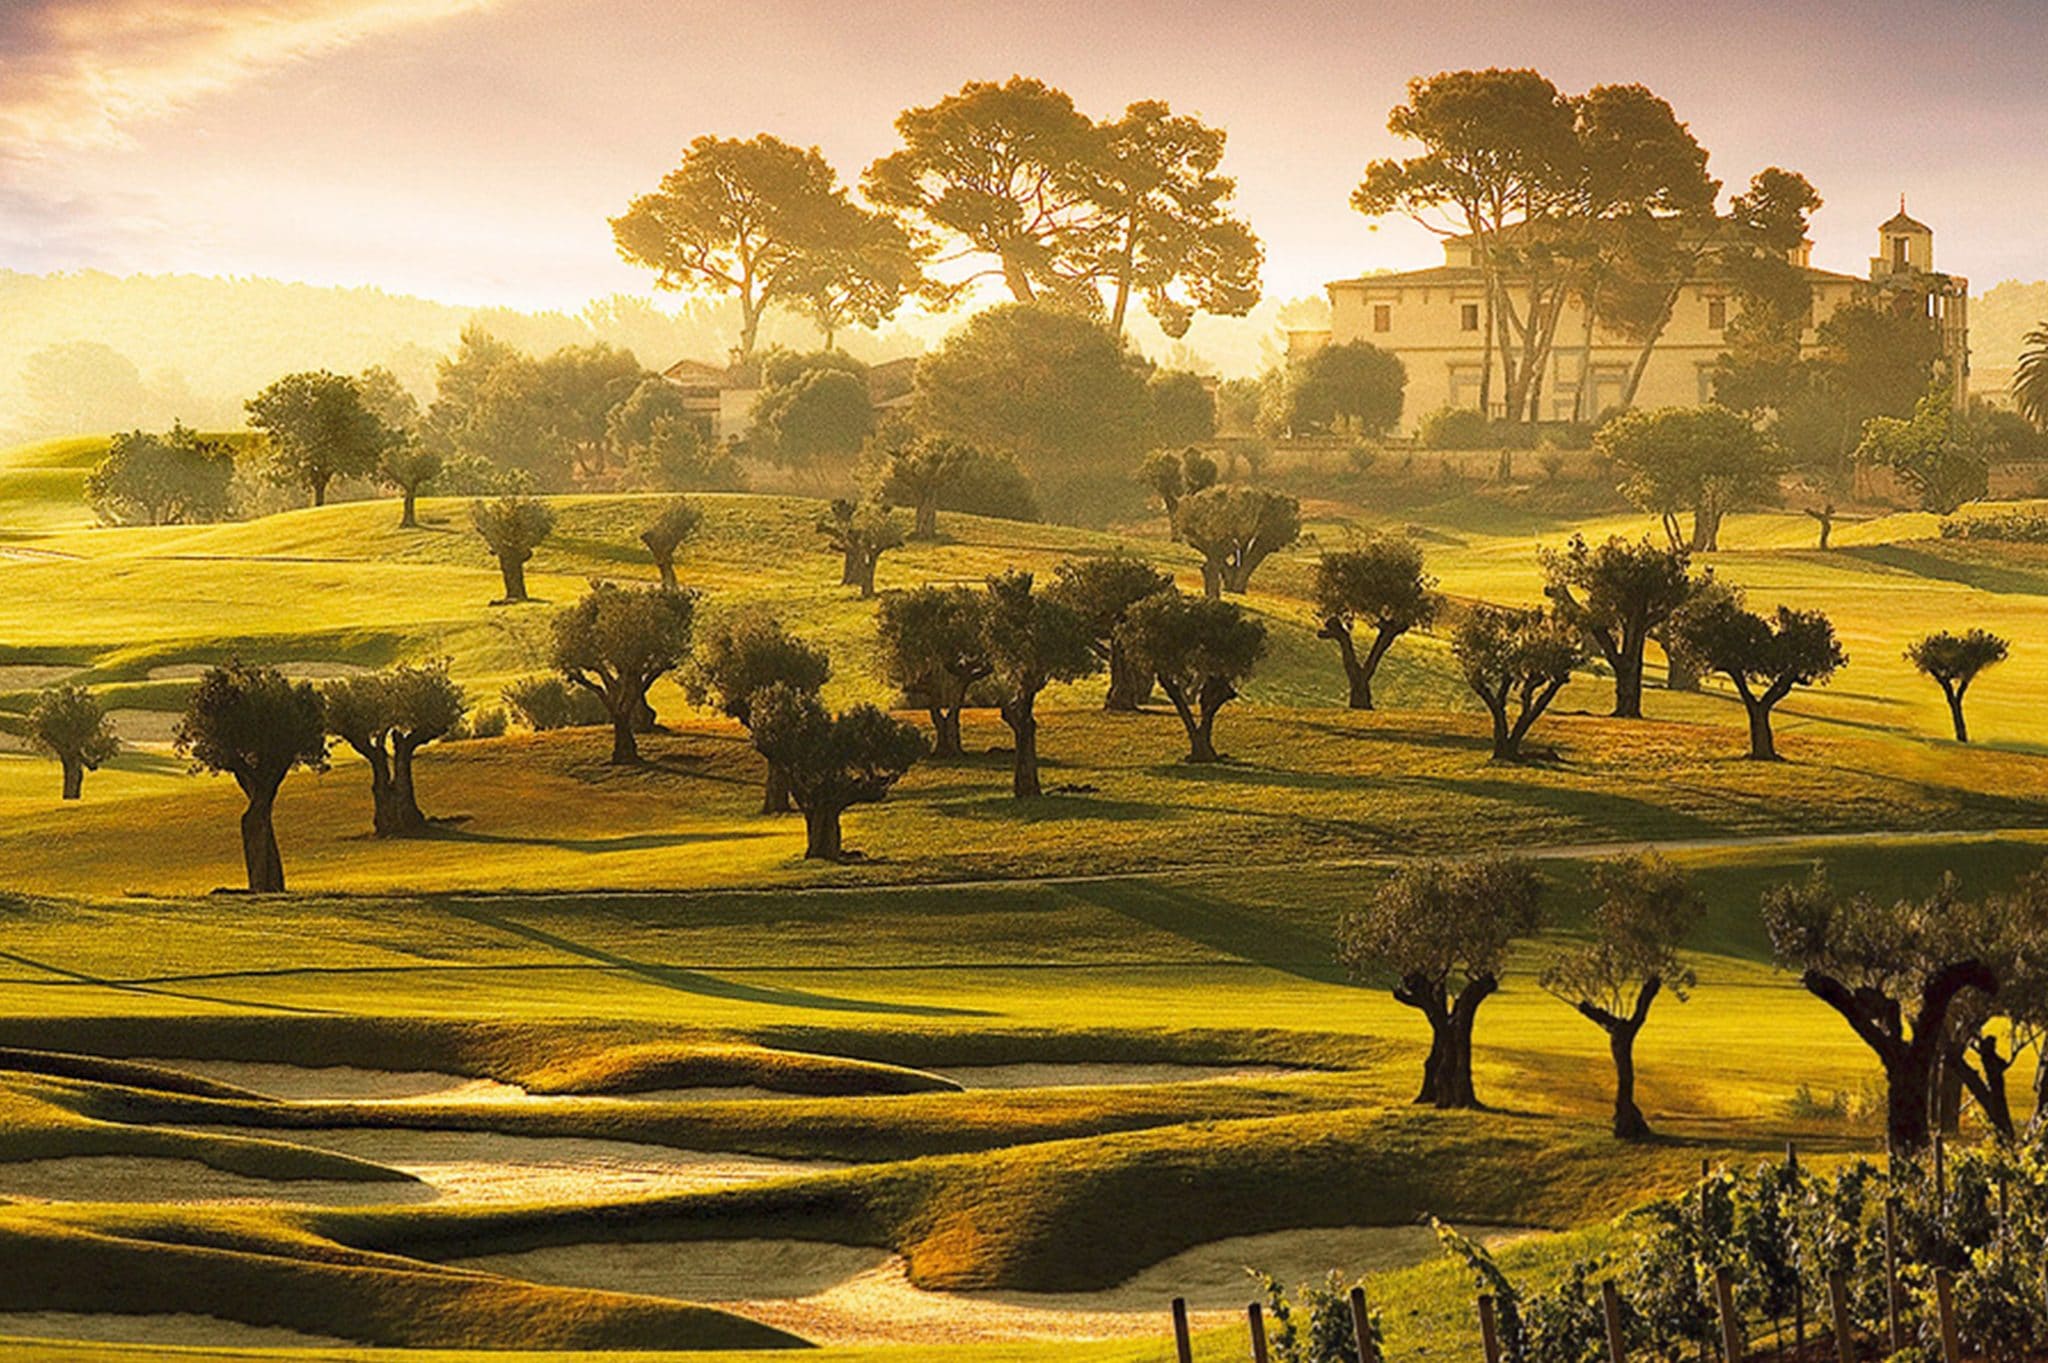 Vacaciones de golf, los mejores campos de España